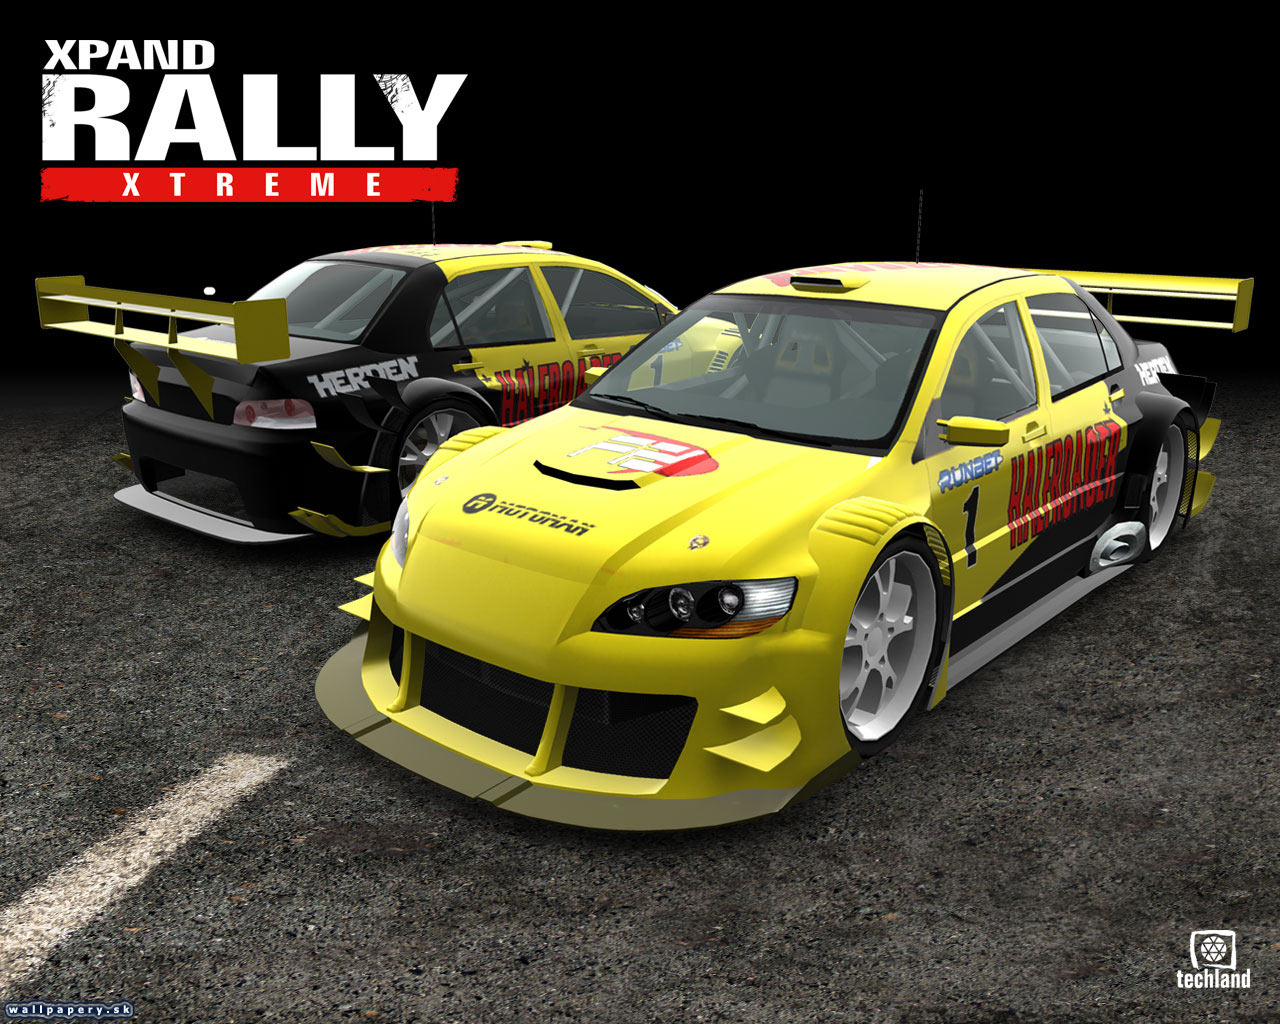 Xpand Rally Xtreme - wallpaper 5